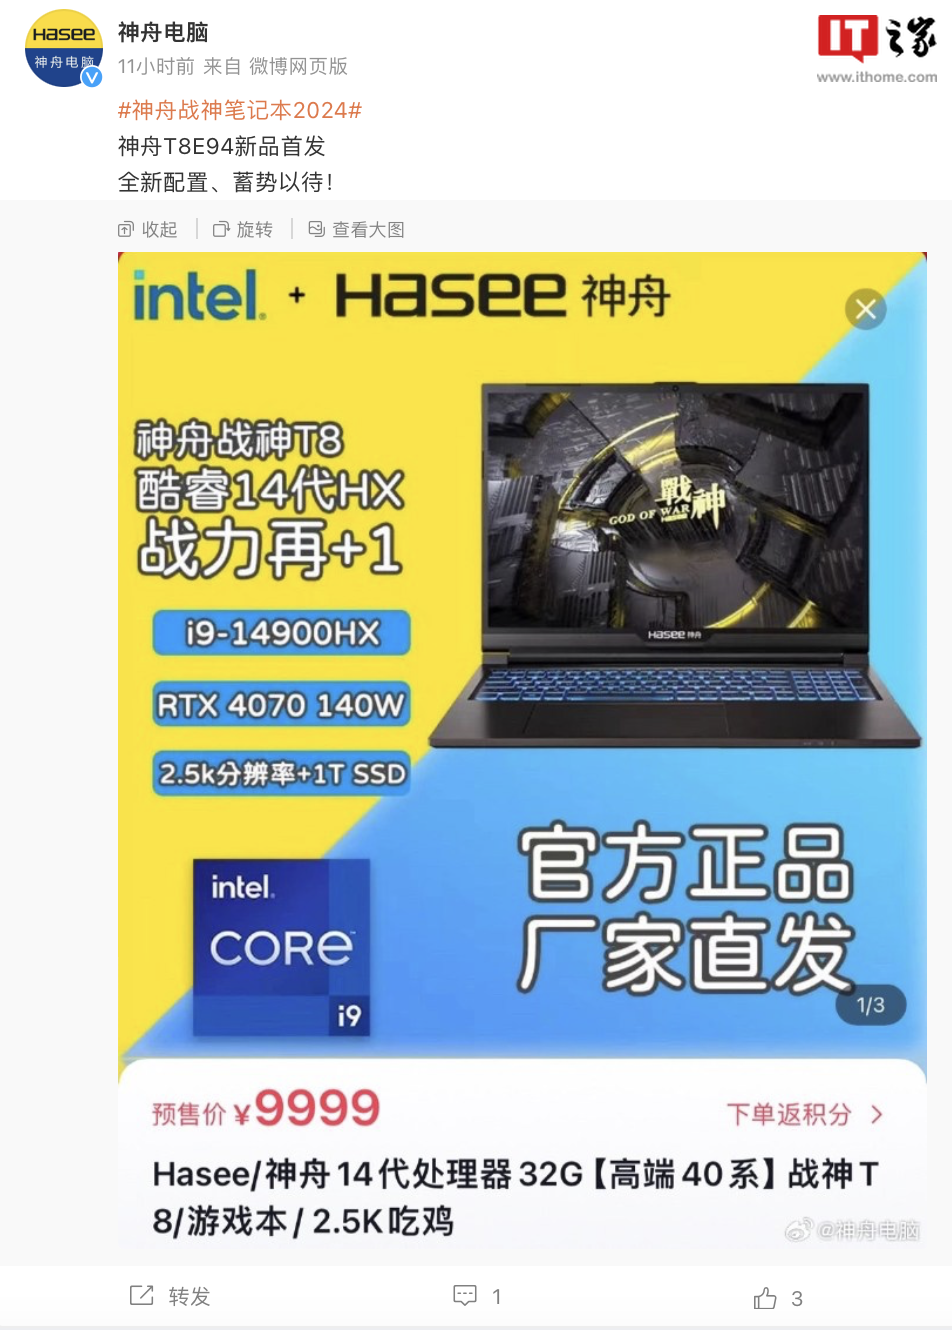 神舟战神 T8 16 英寸笔记本电脑配置上新：i9-14900HX + 140W RTX 4070，售 9999 元